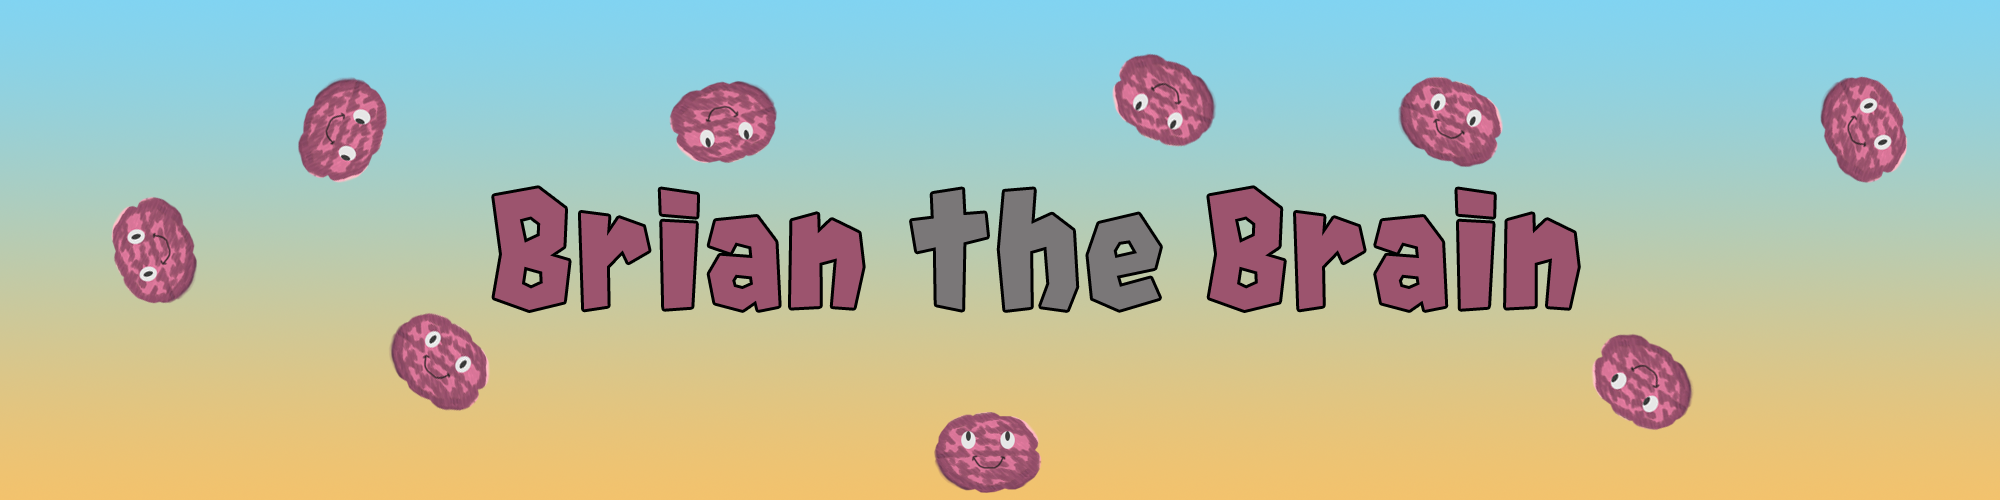 Brian the Brain (Demo Version)